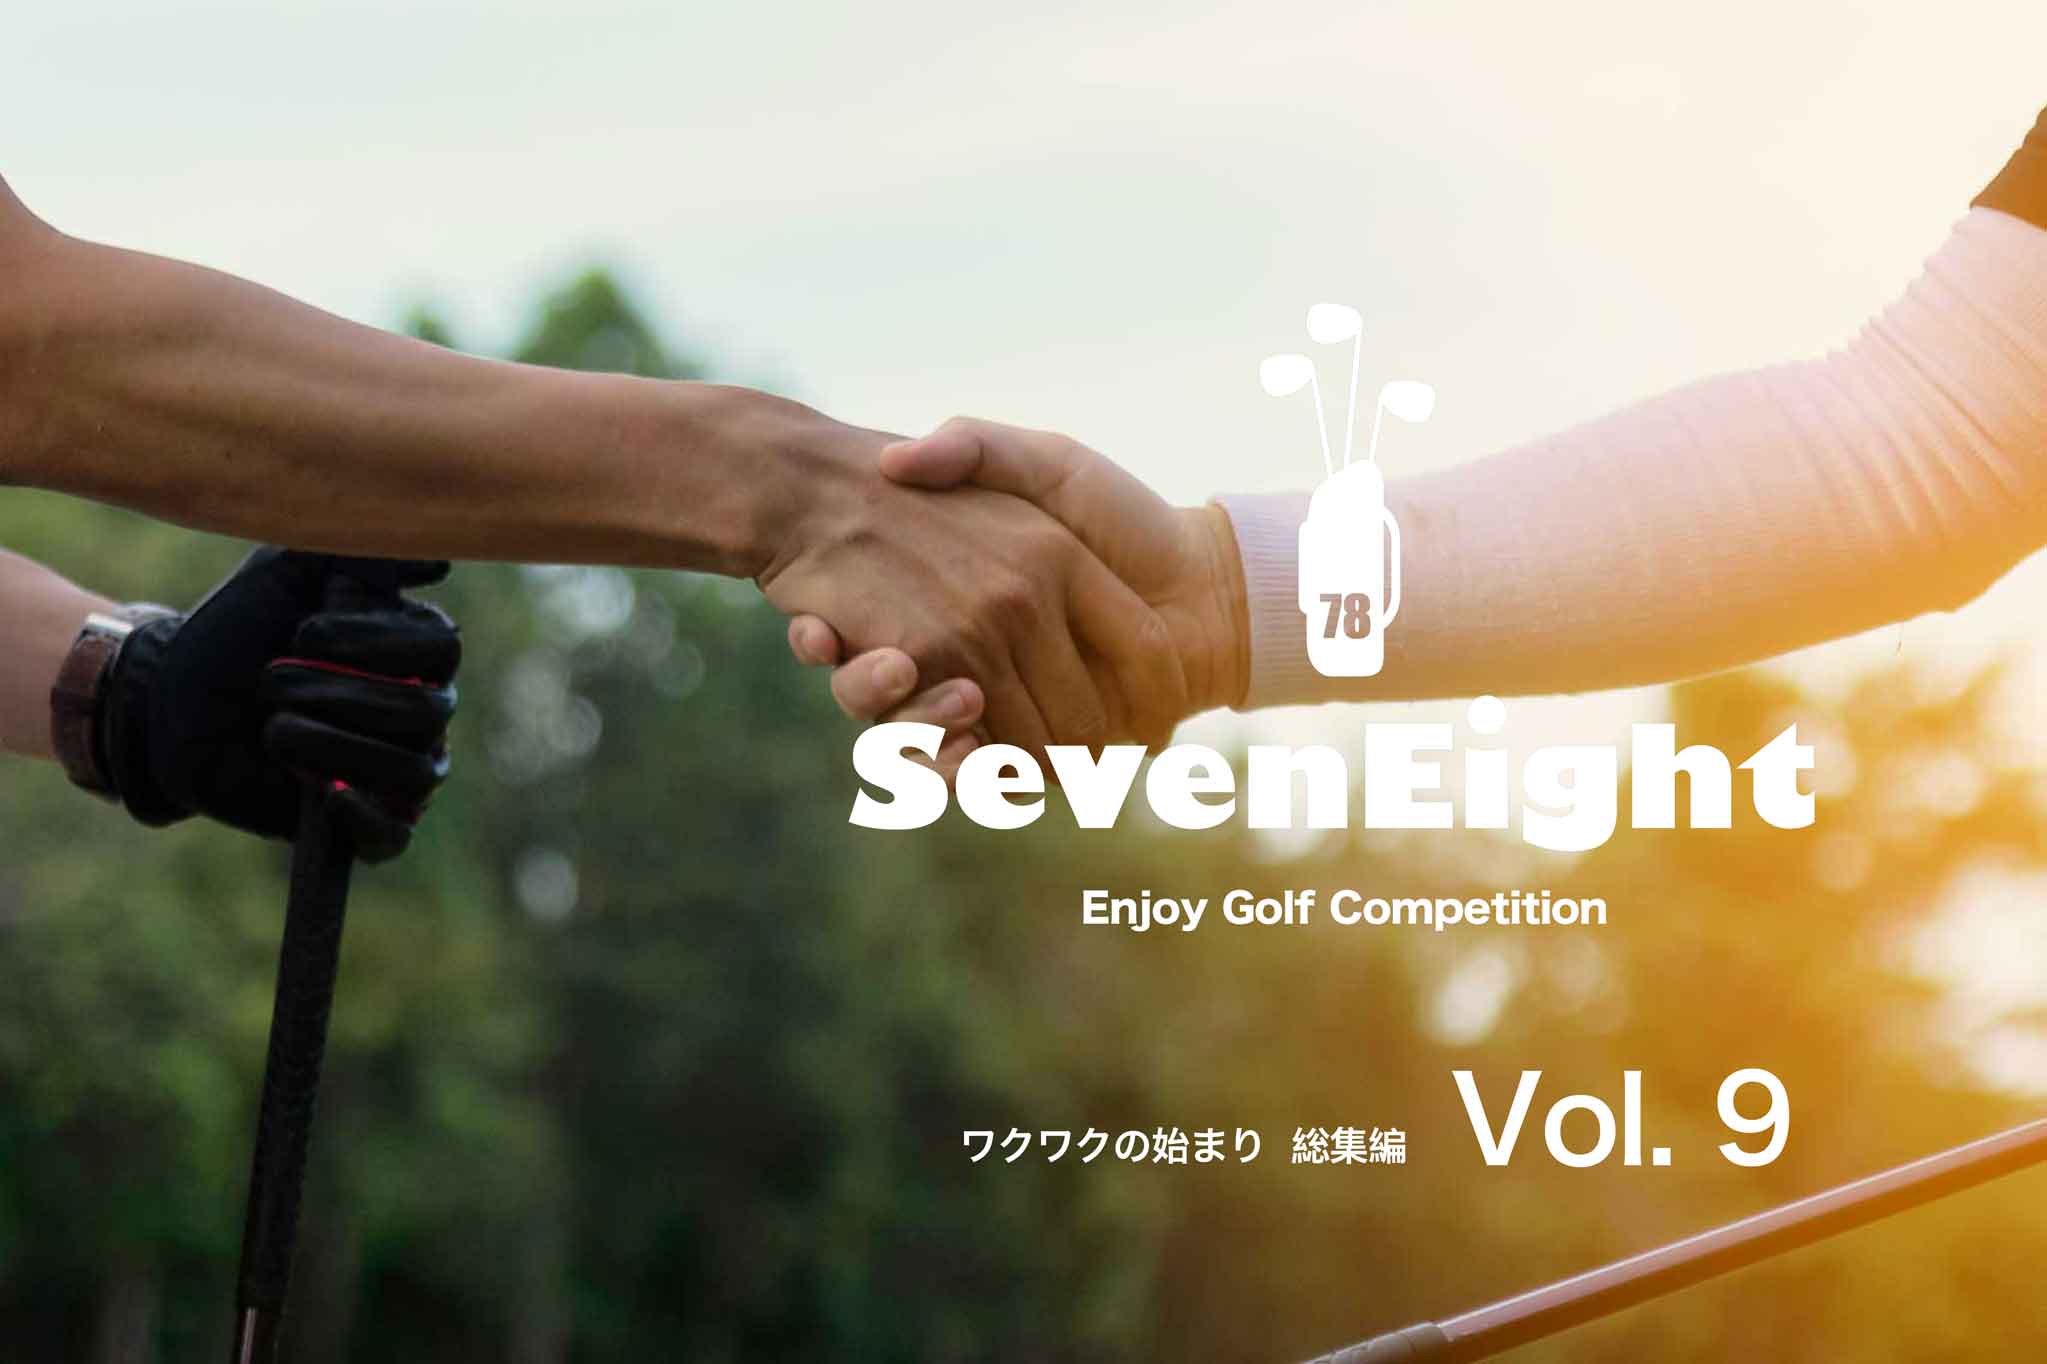 関西ゴルフサークル セブンエイトのPR動画Vol.9のページの扉